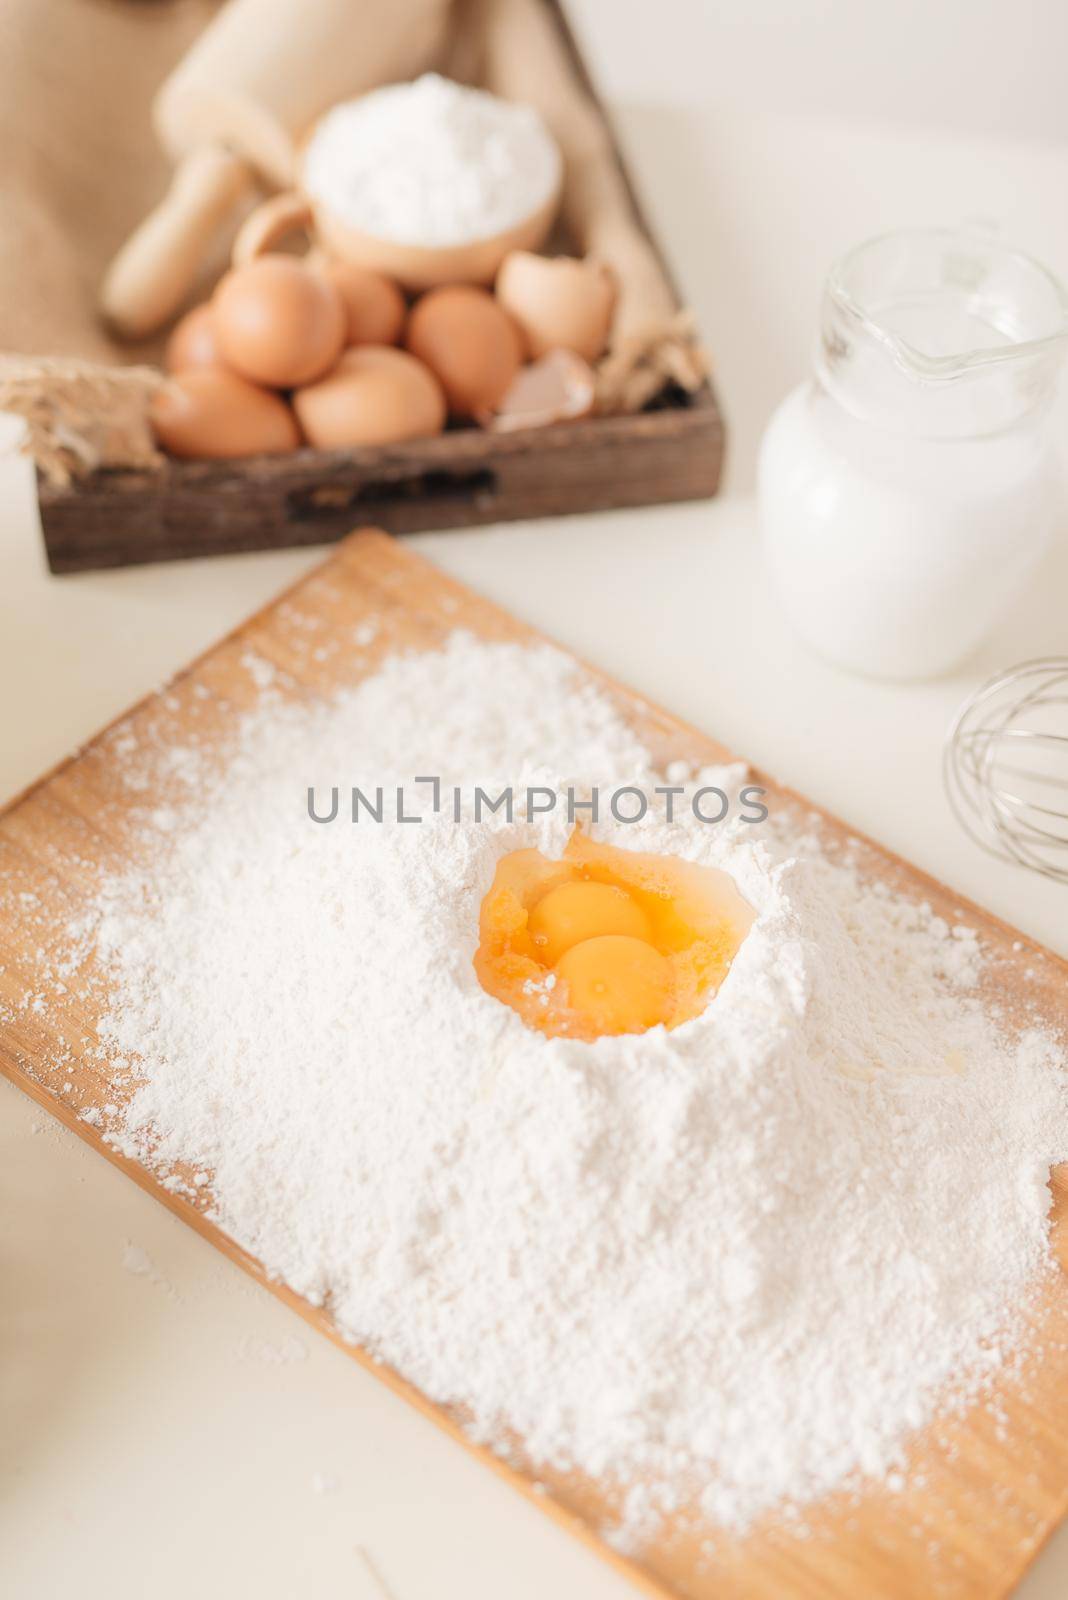 Baking ingredient's preparation. - Image